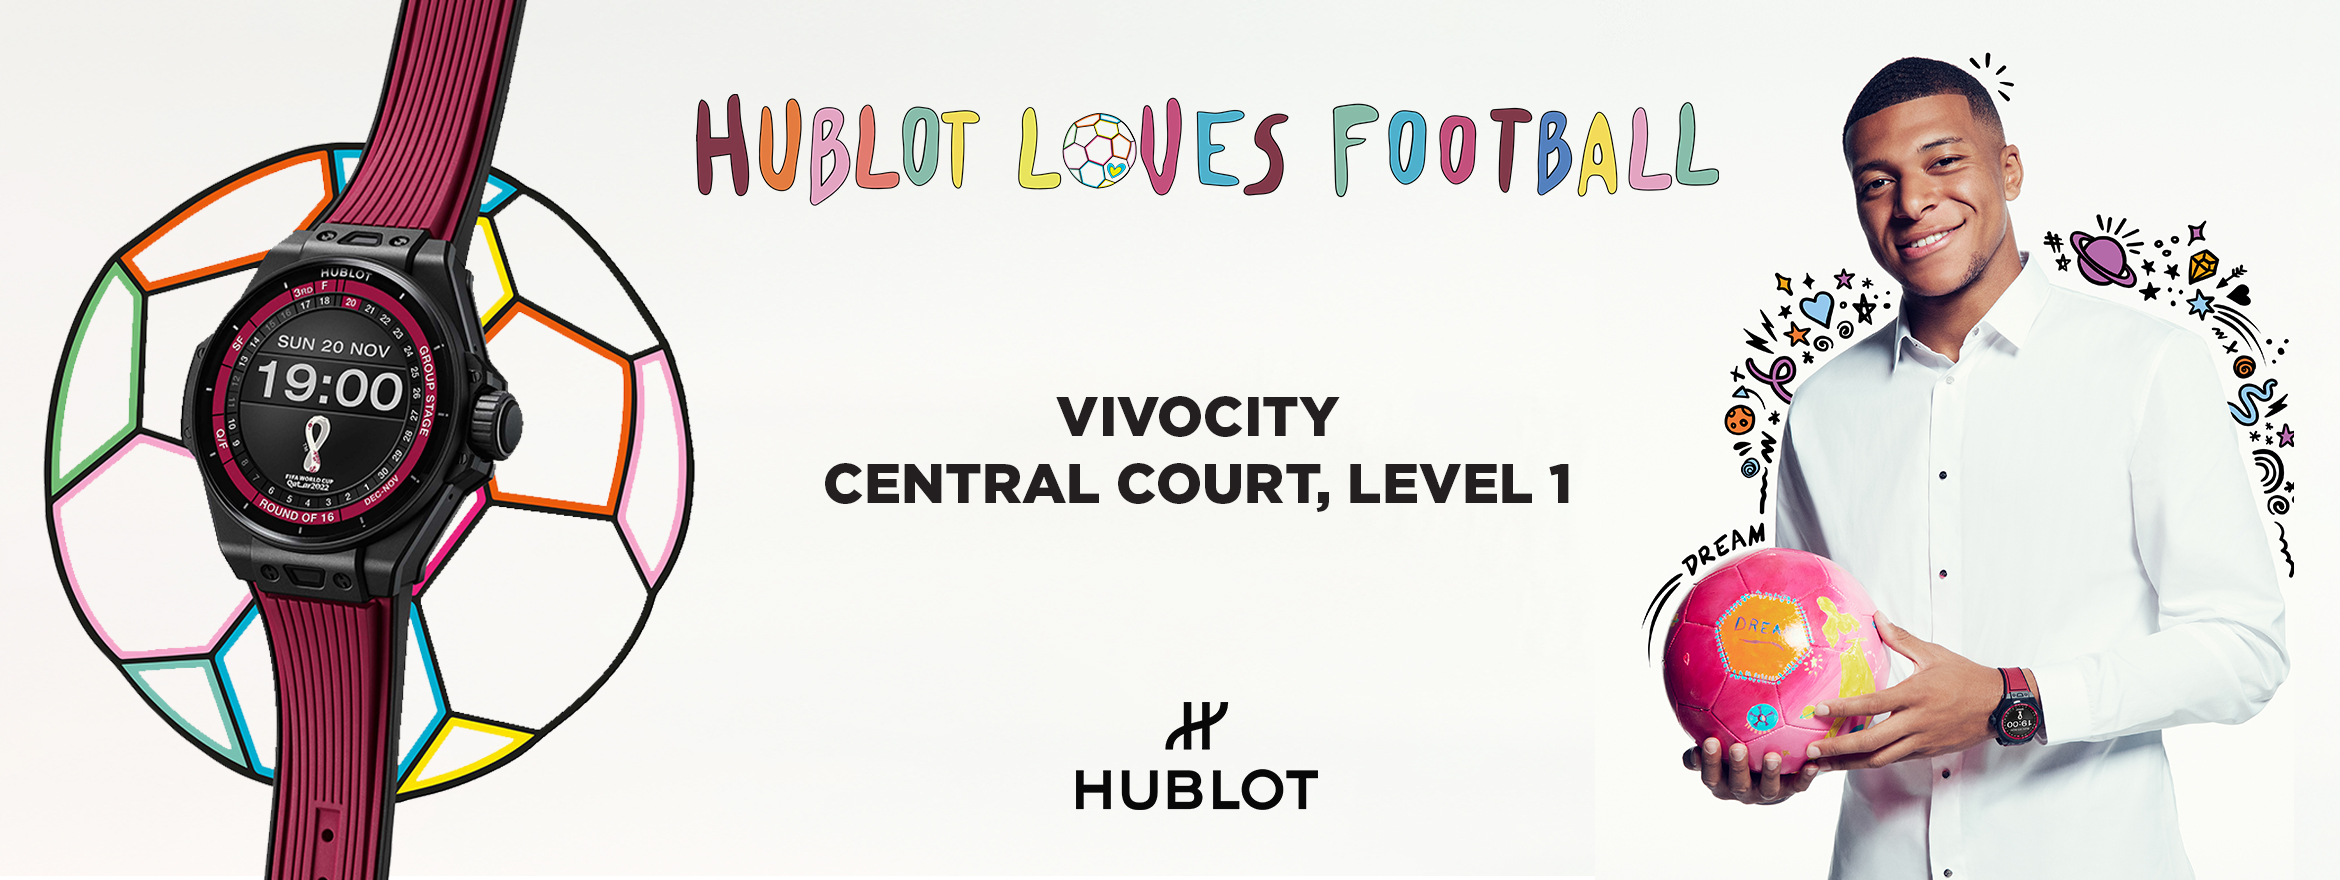 Hublot - Hublot Loves Football